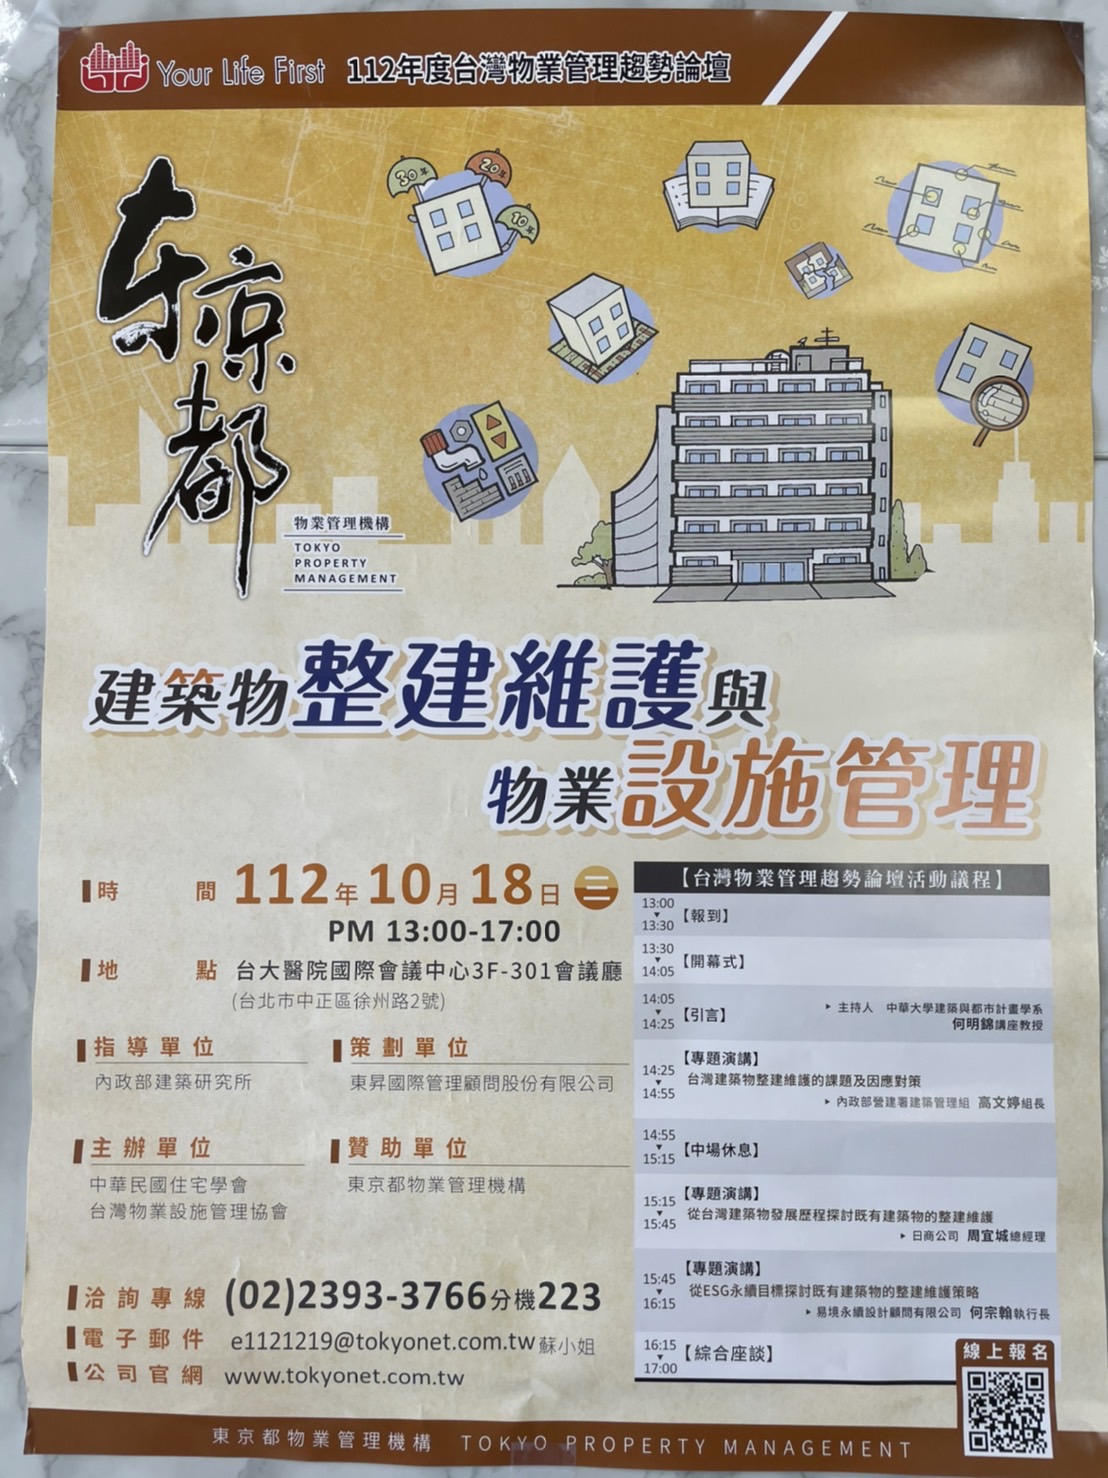 【活動資訊分享】112年度台灣物業管理趨勢論壇